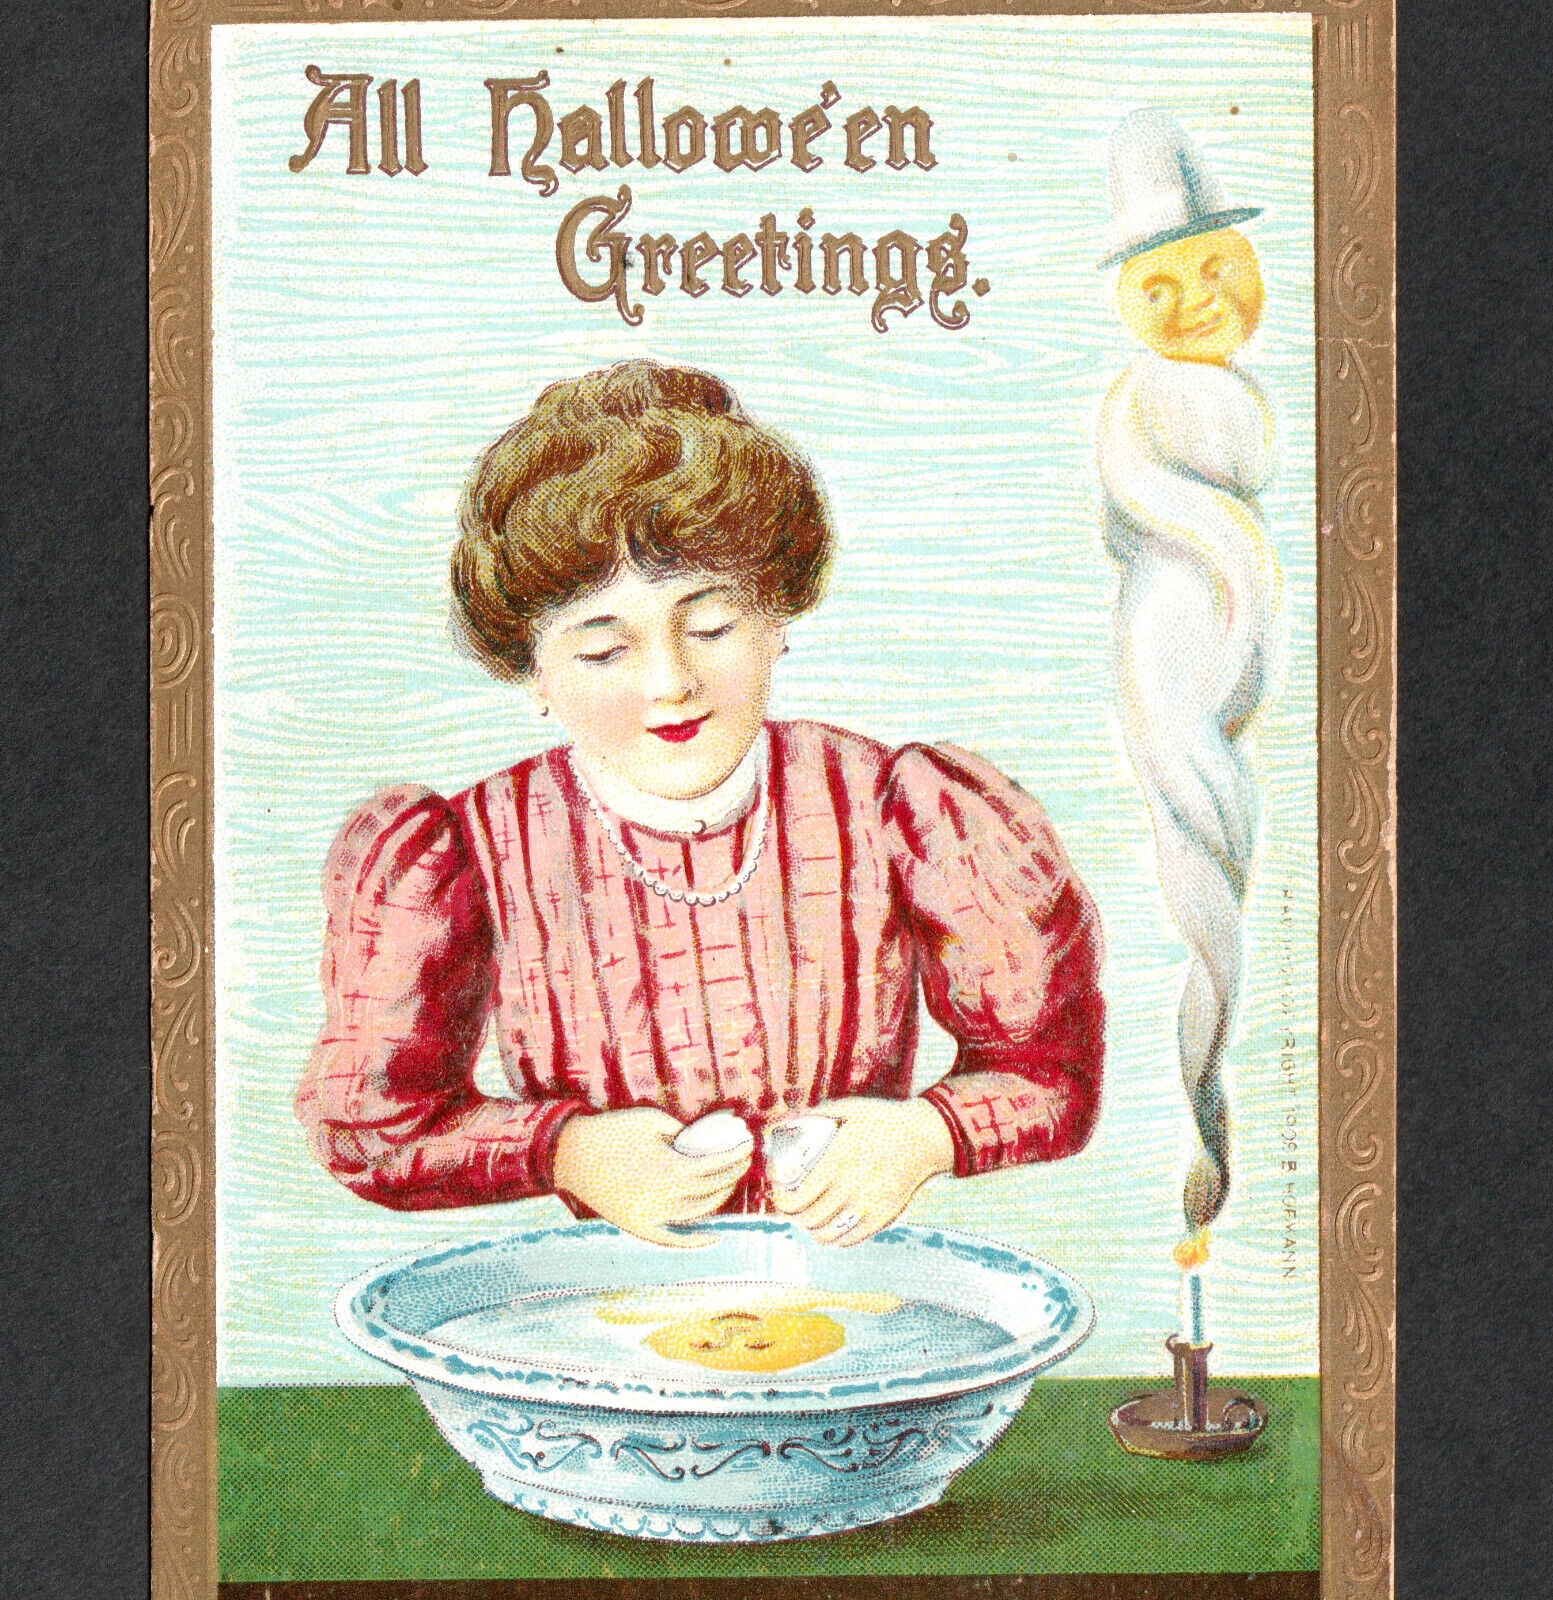 All Halloween Greetings 1909 Egg Bowl Love Game Goblin Gottschalk 2097 PostCard